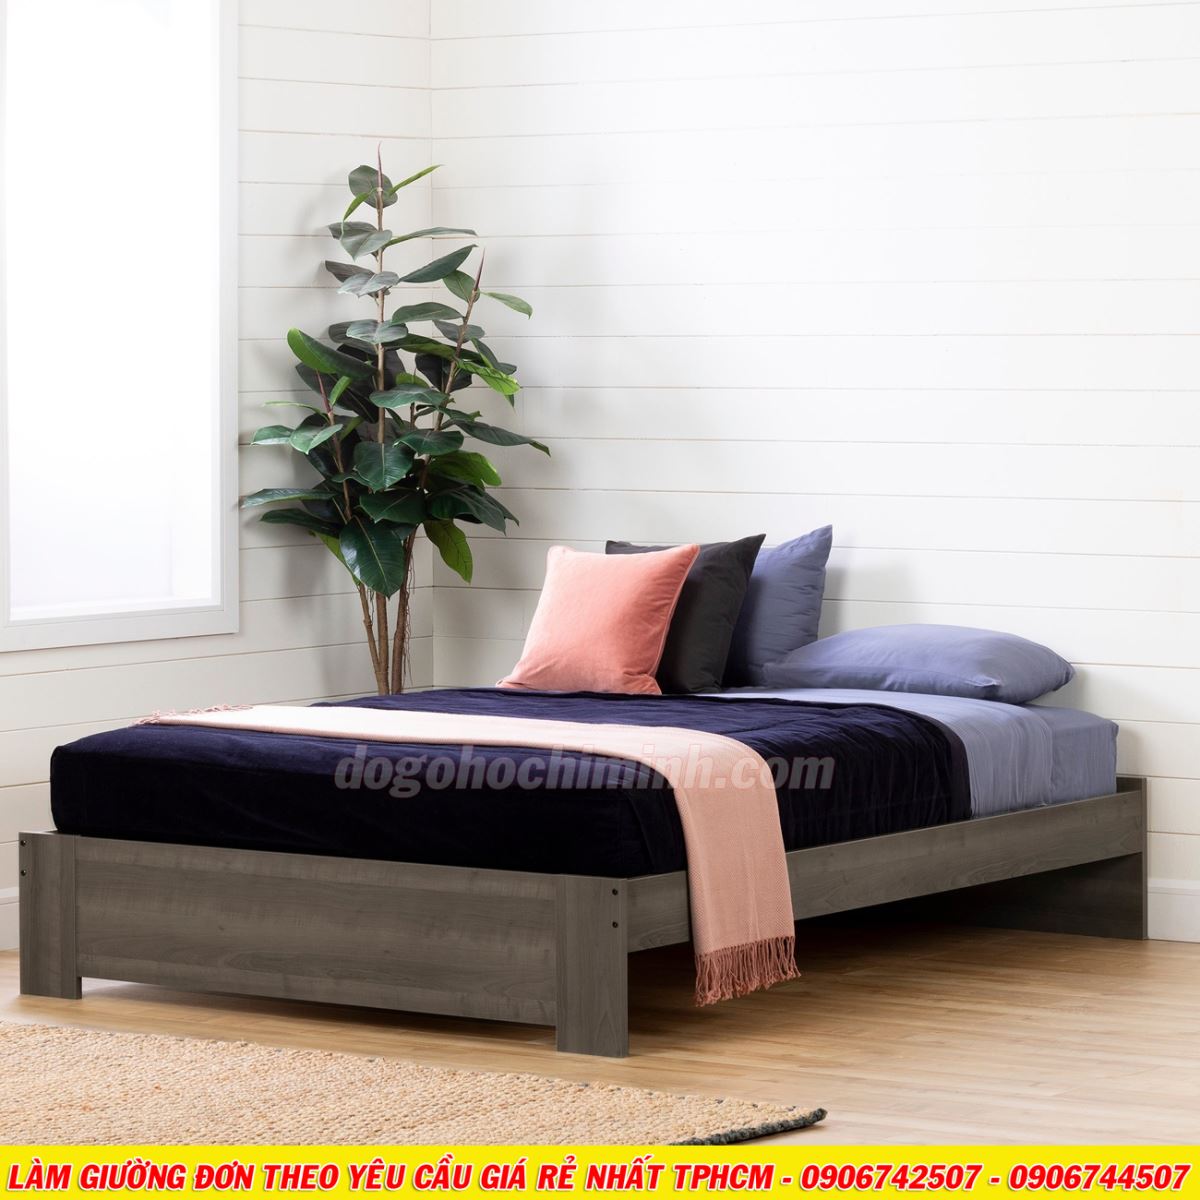 Mẫu giường đơn mới mang phong cách châu âu giá rẻ đẹp TPHCM 2020 - P1